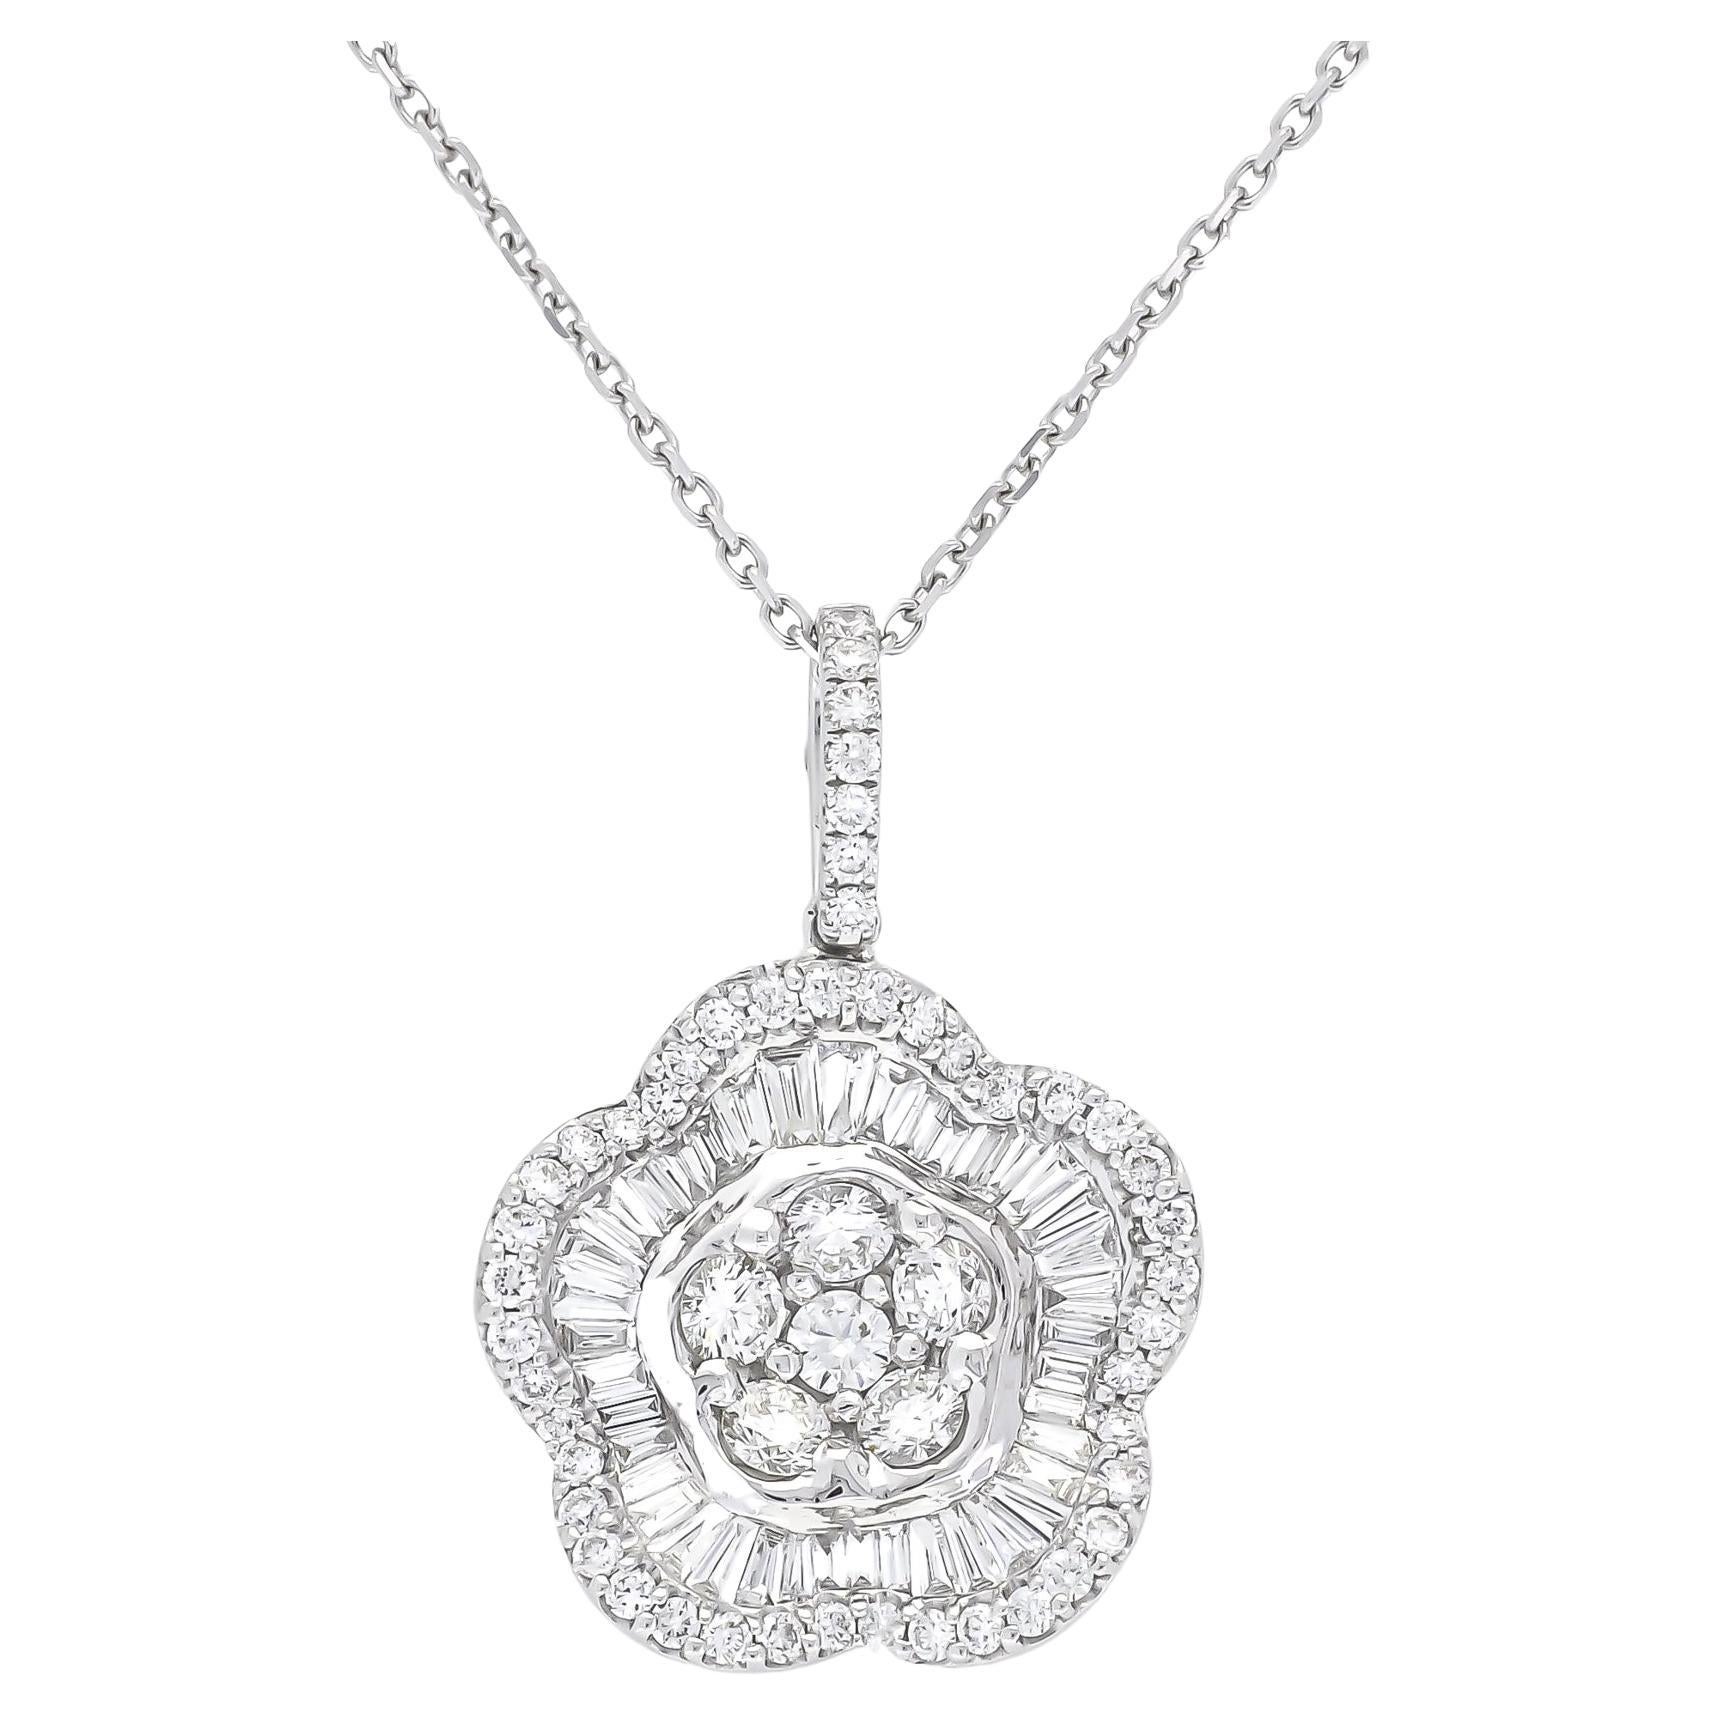 Collier pendentif moderne en forme de fleur en or blanc 18 carats avec diamants naturels et halo